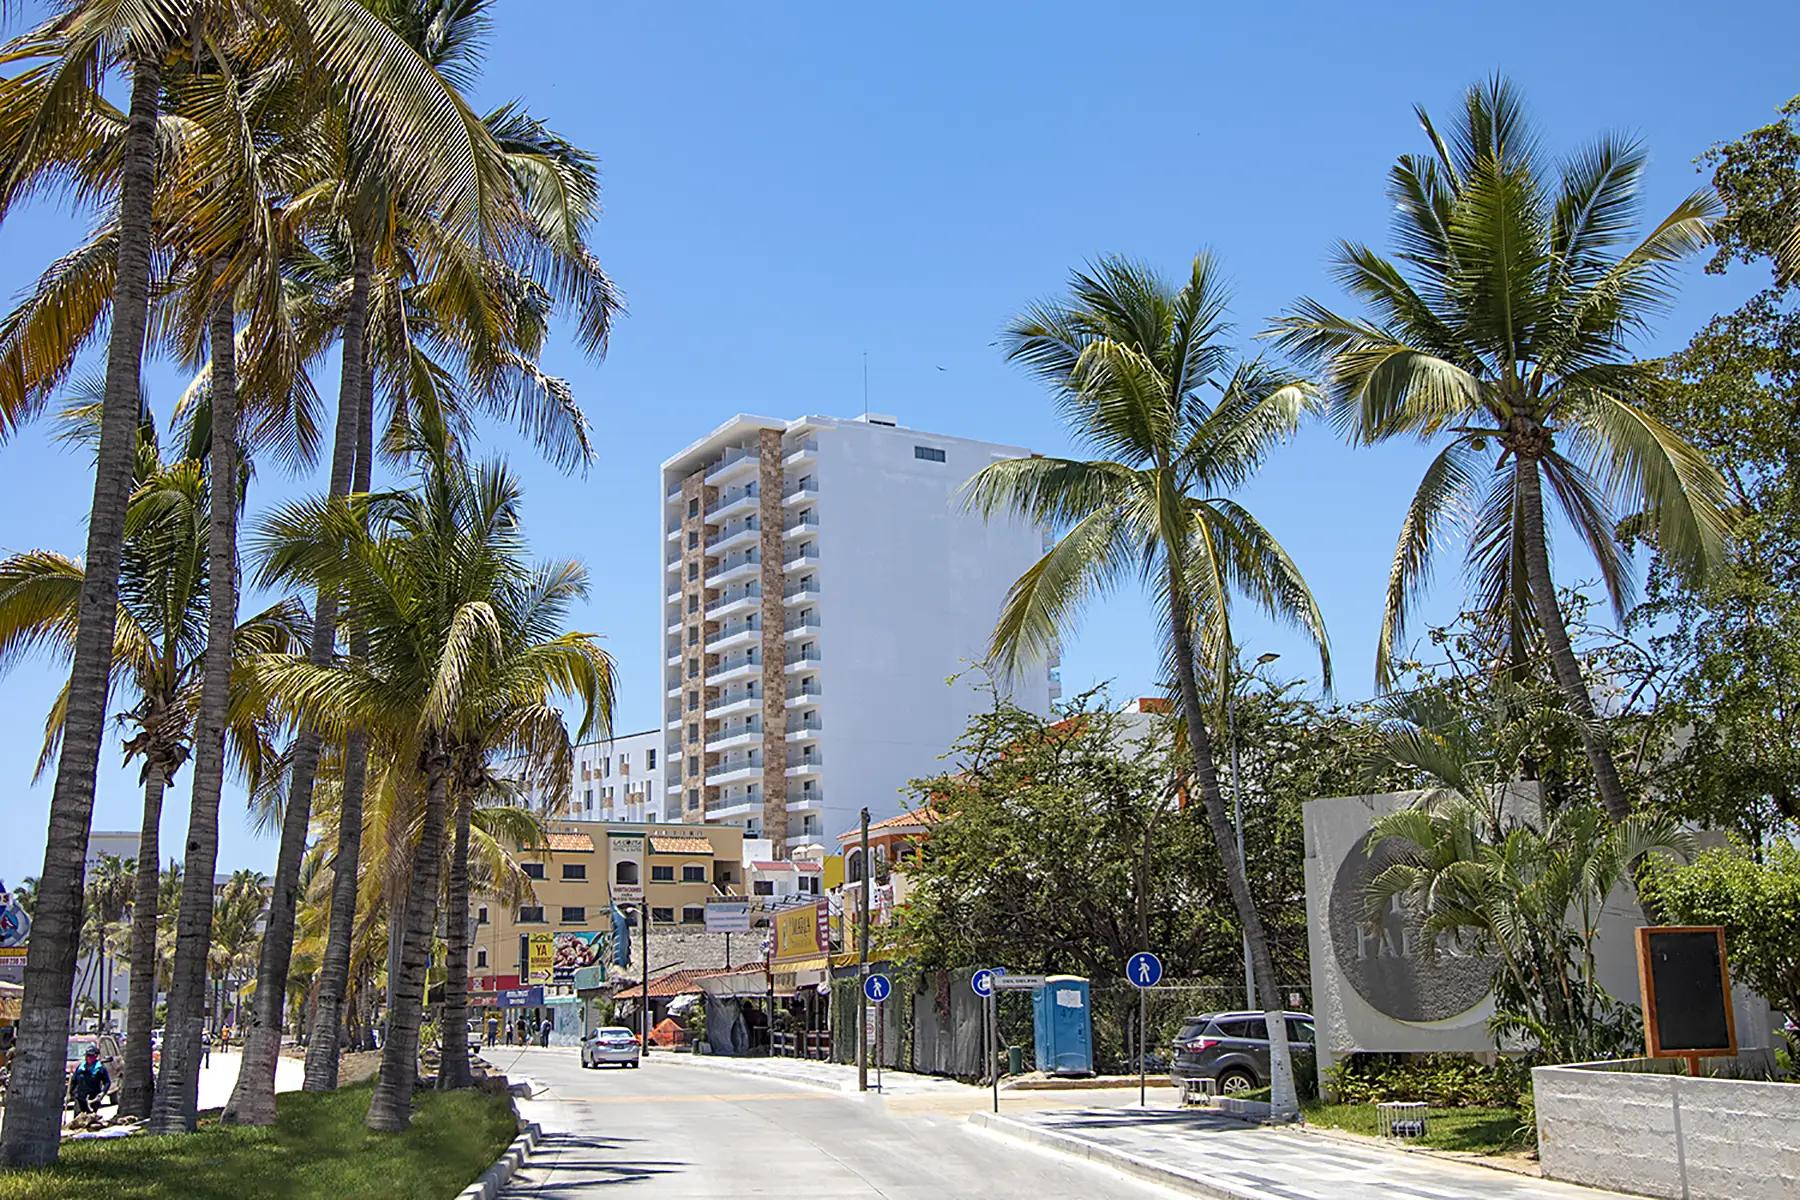 Hotel Pacific Palace Mazatlán sobre la avenida Sábalo Country, camino por la calle y balcones de habitaciones con vista a la ciudad